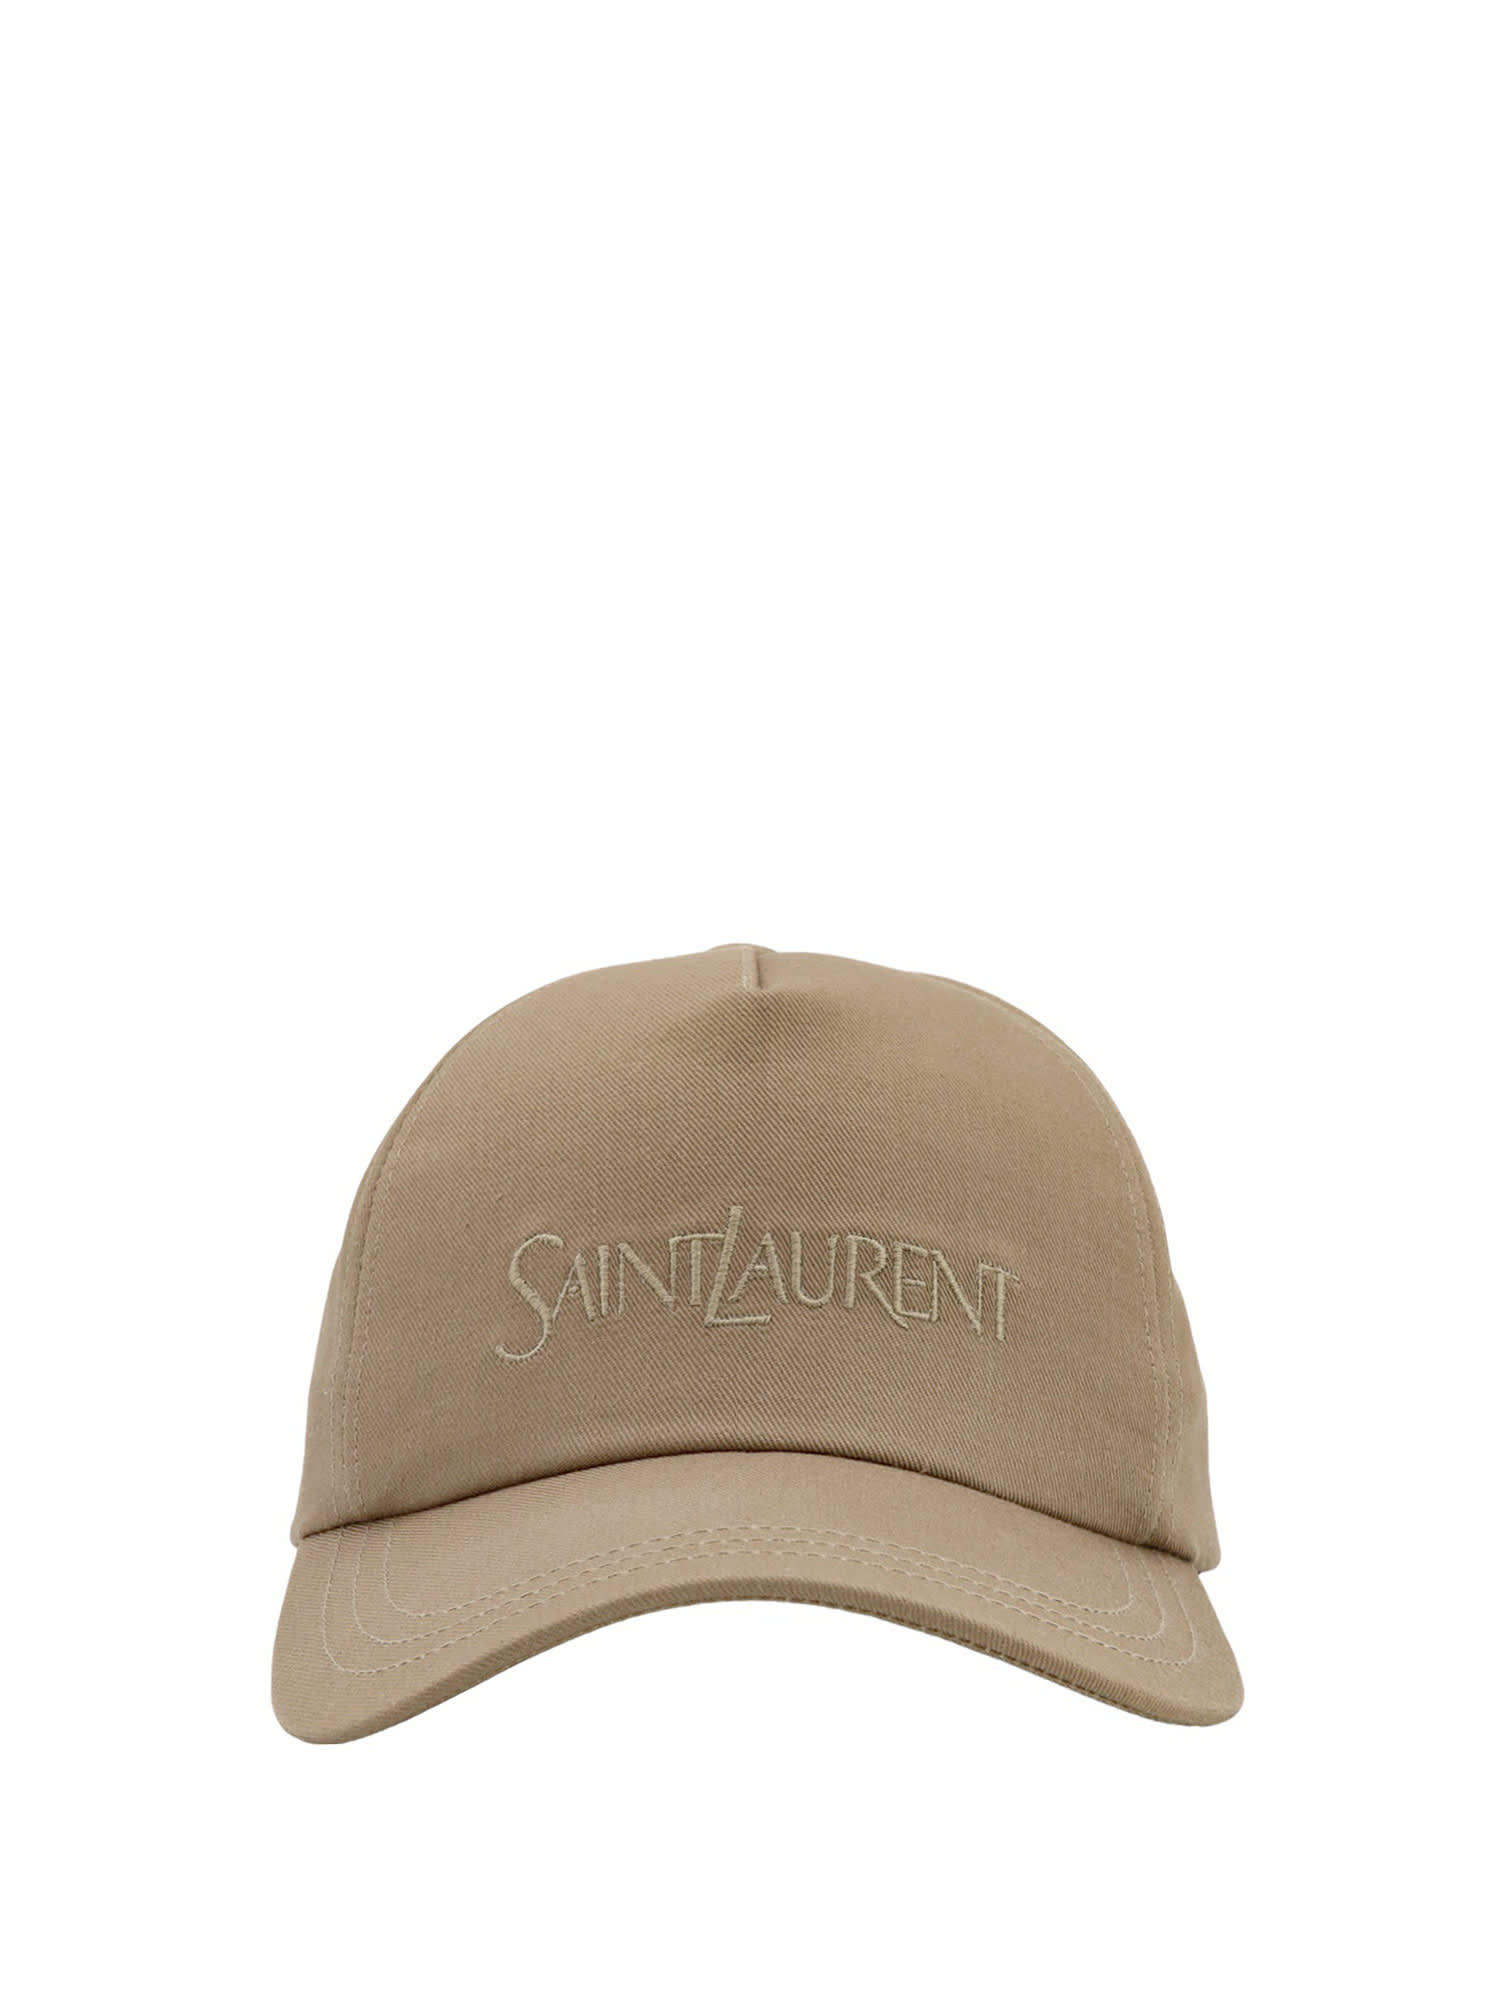 SAINT LAURENT HAT